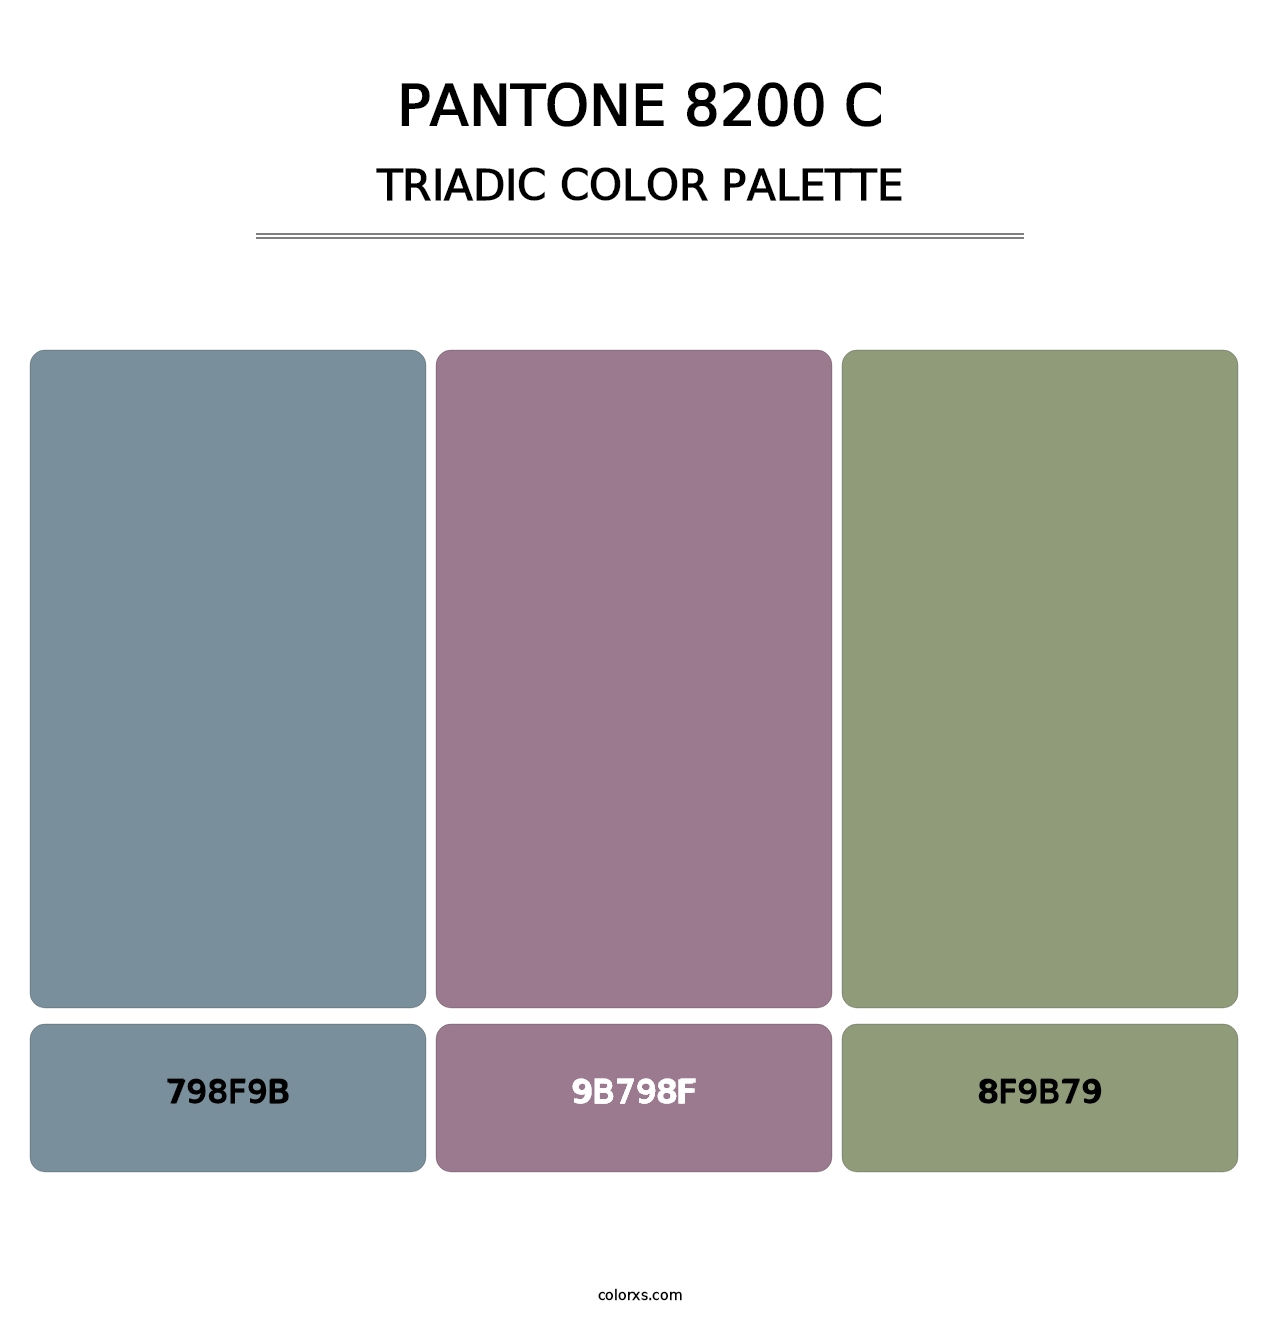 PANTONE 8200 C - Triadic Color Palette